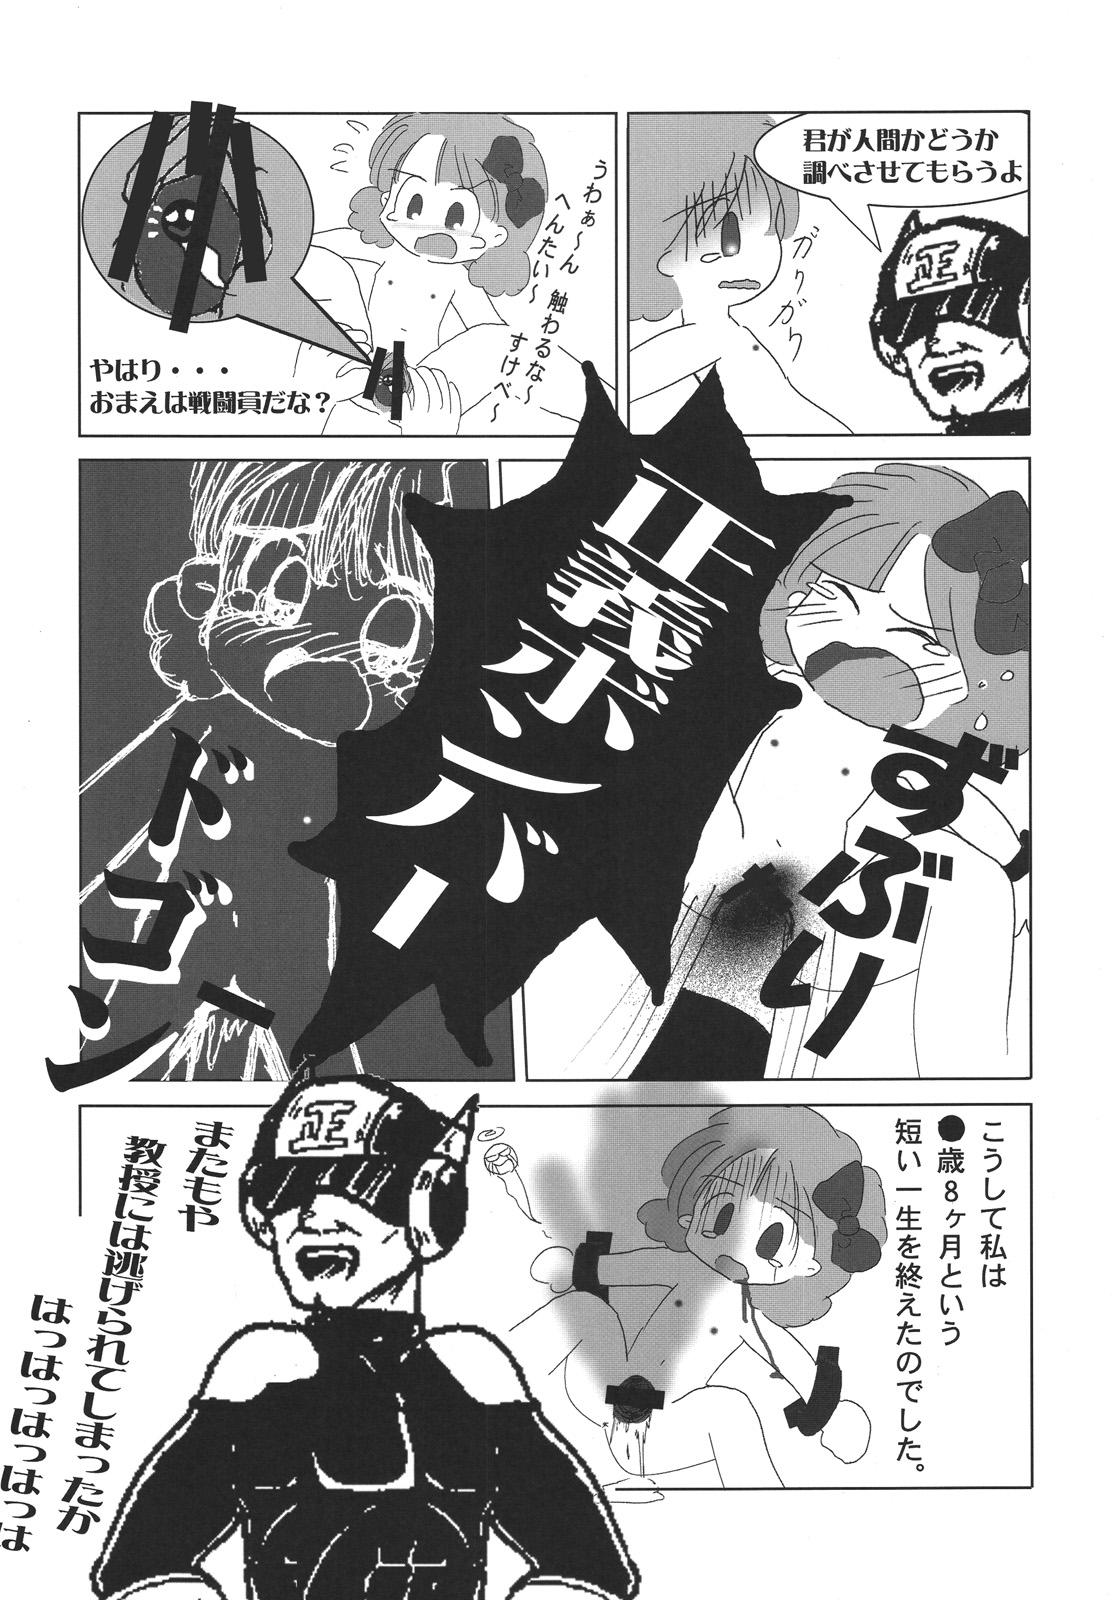 Publico Tsurupeta Kenkyuu Houkokusho "Kakyuu Sentou In no Isshou" - Turupeta Research Report Riding Cock - Page 8